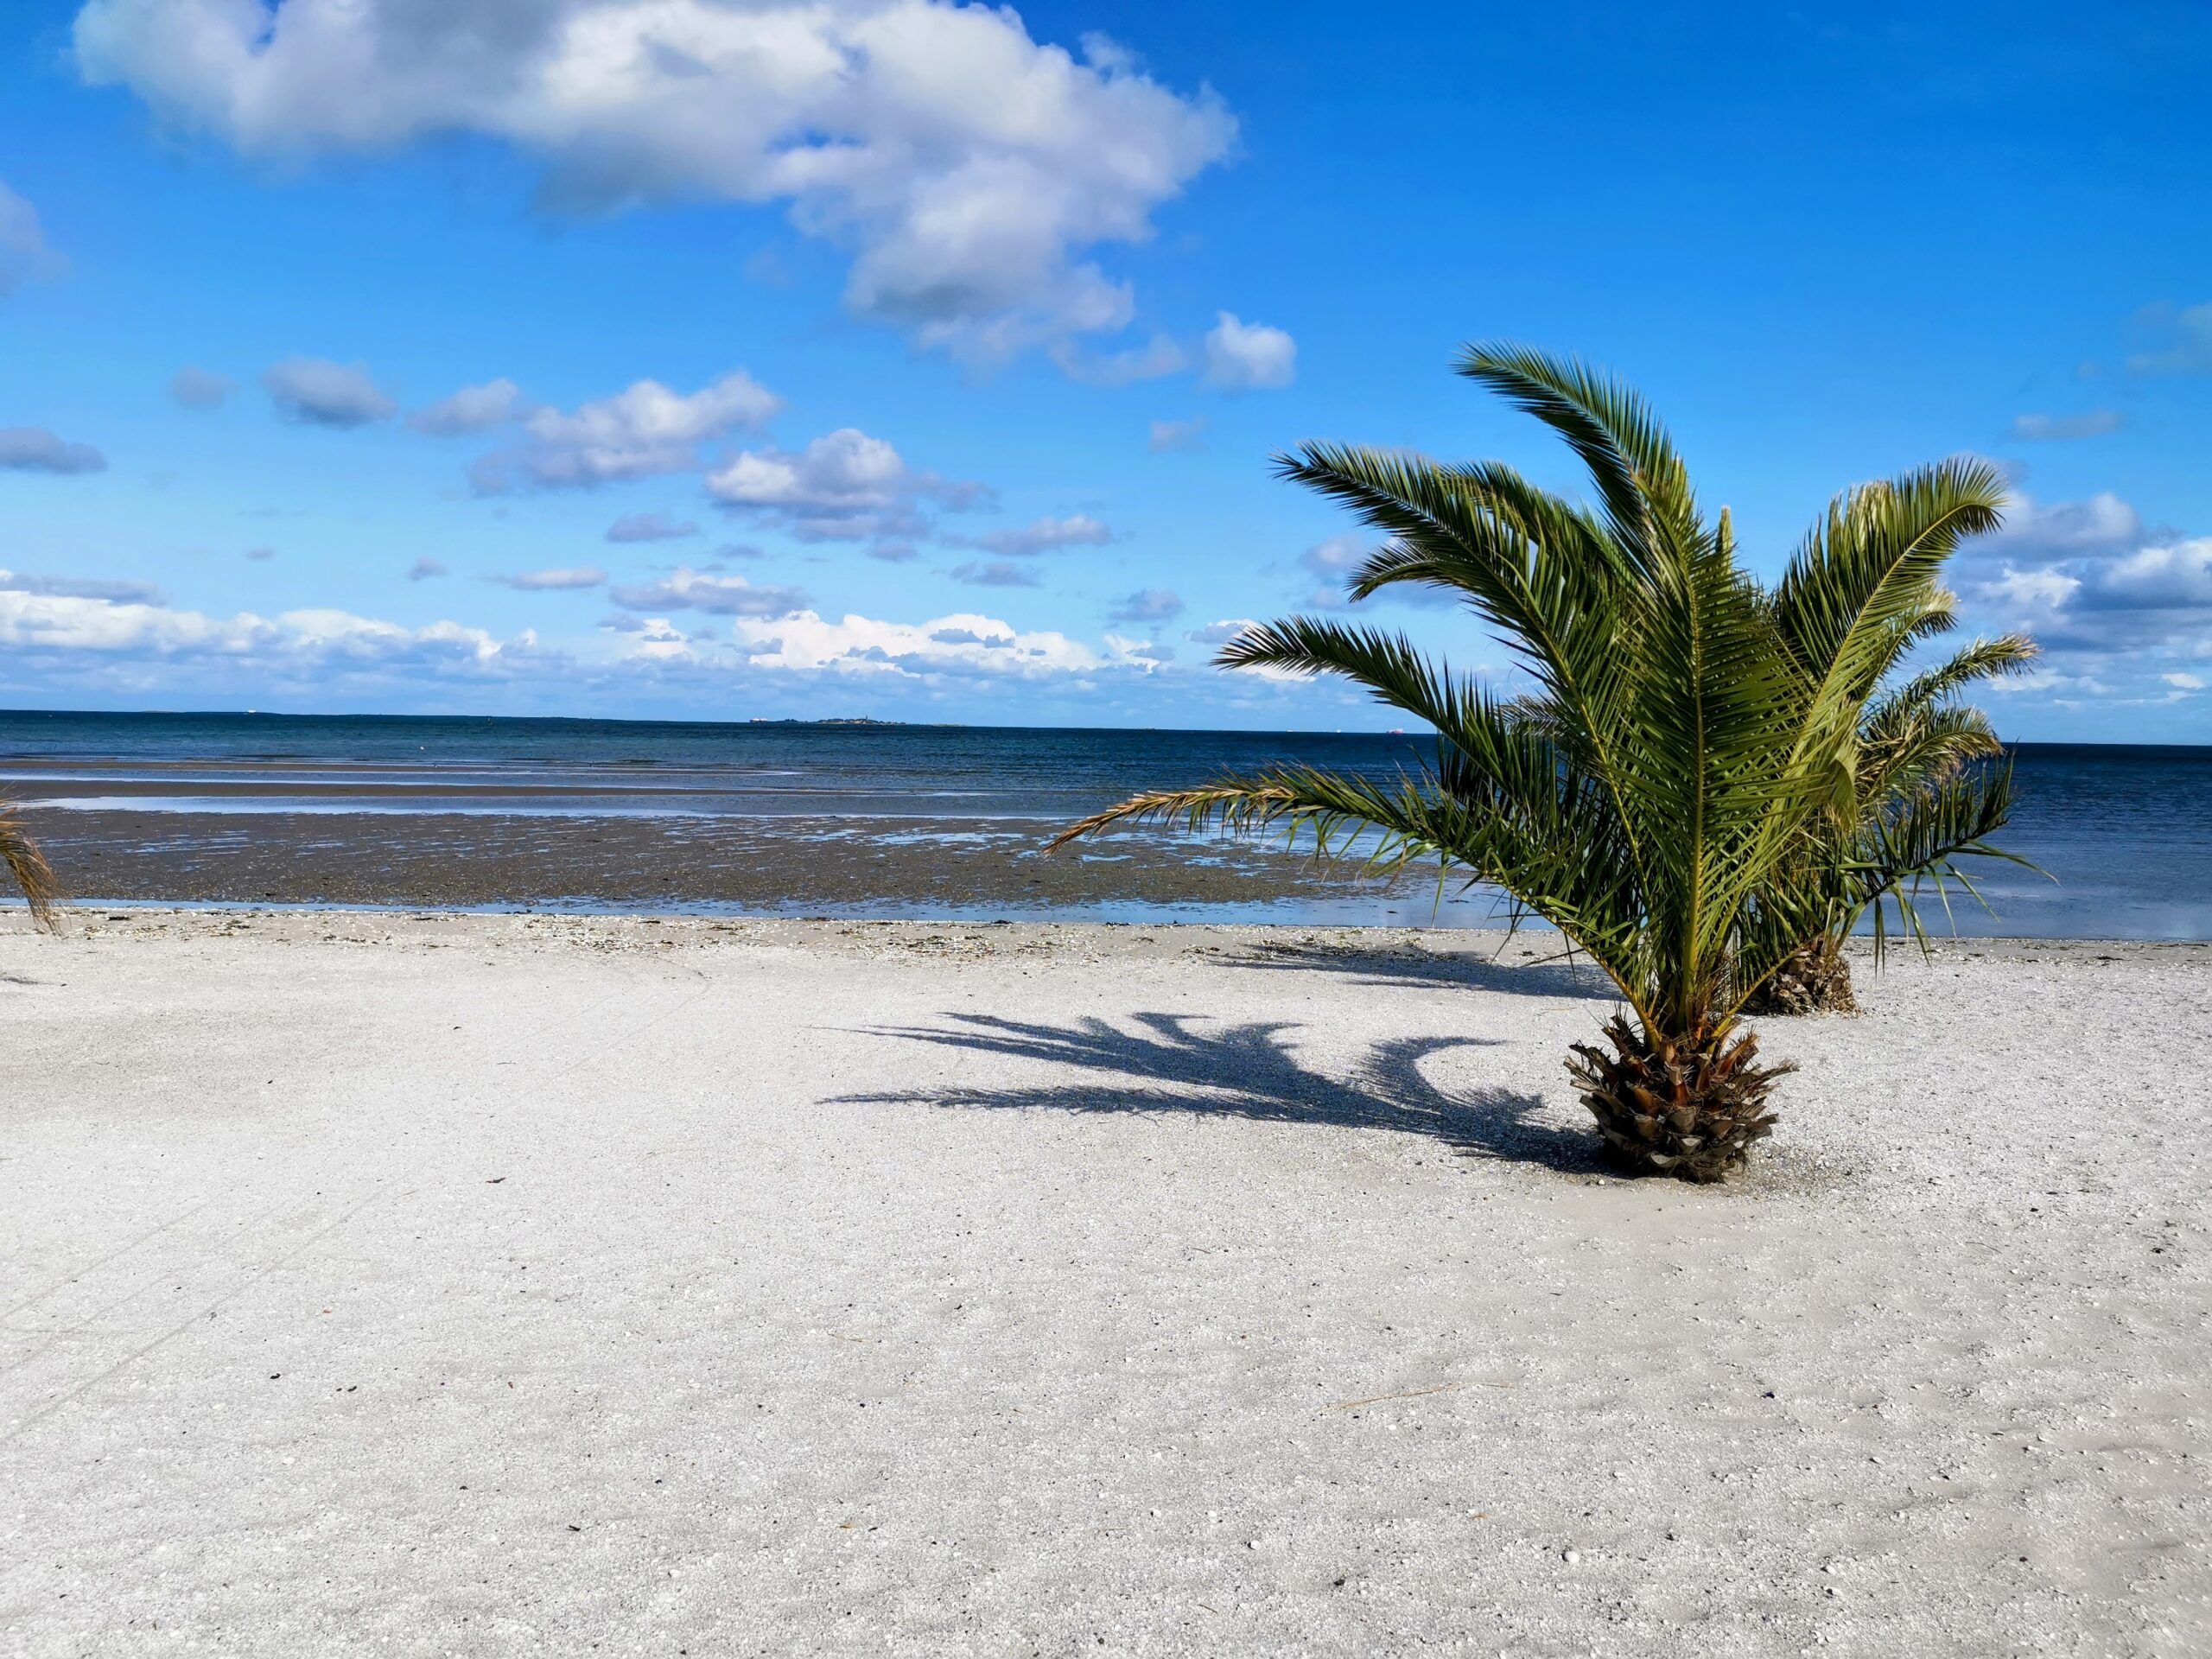 Zwei Palmen an einem Sandstrand.